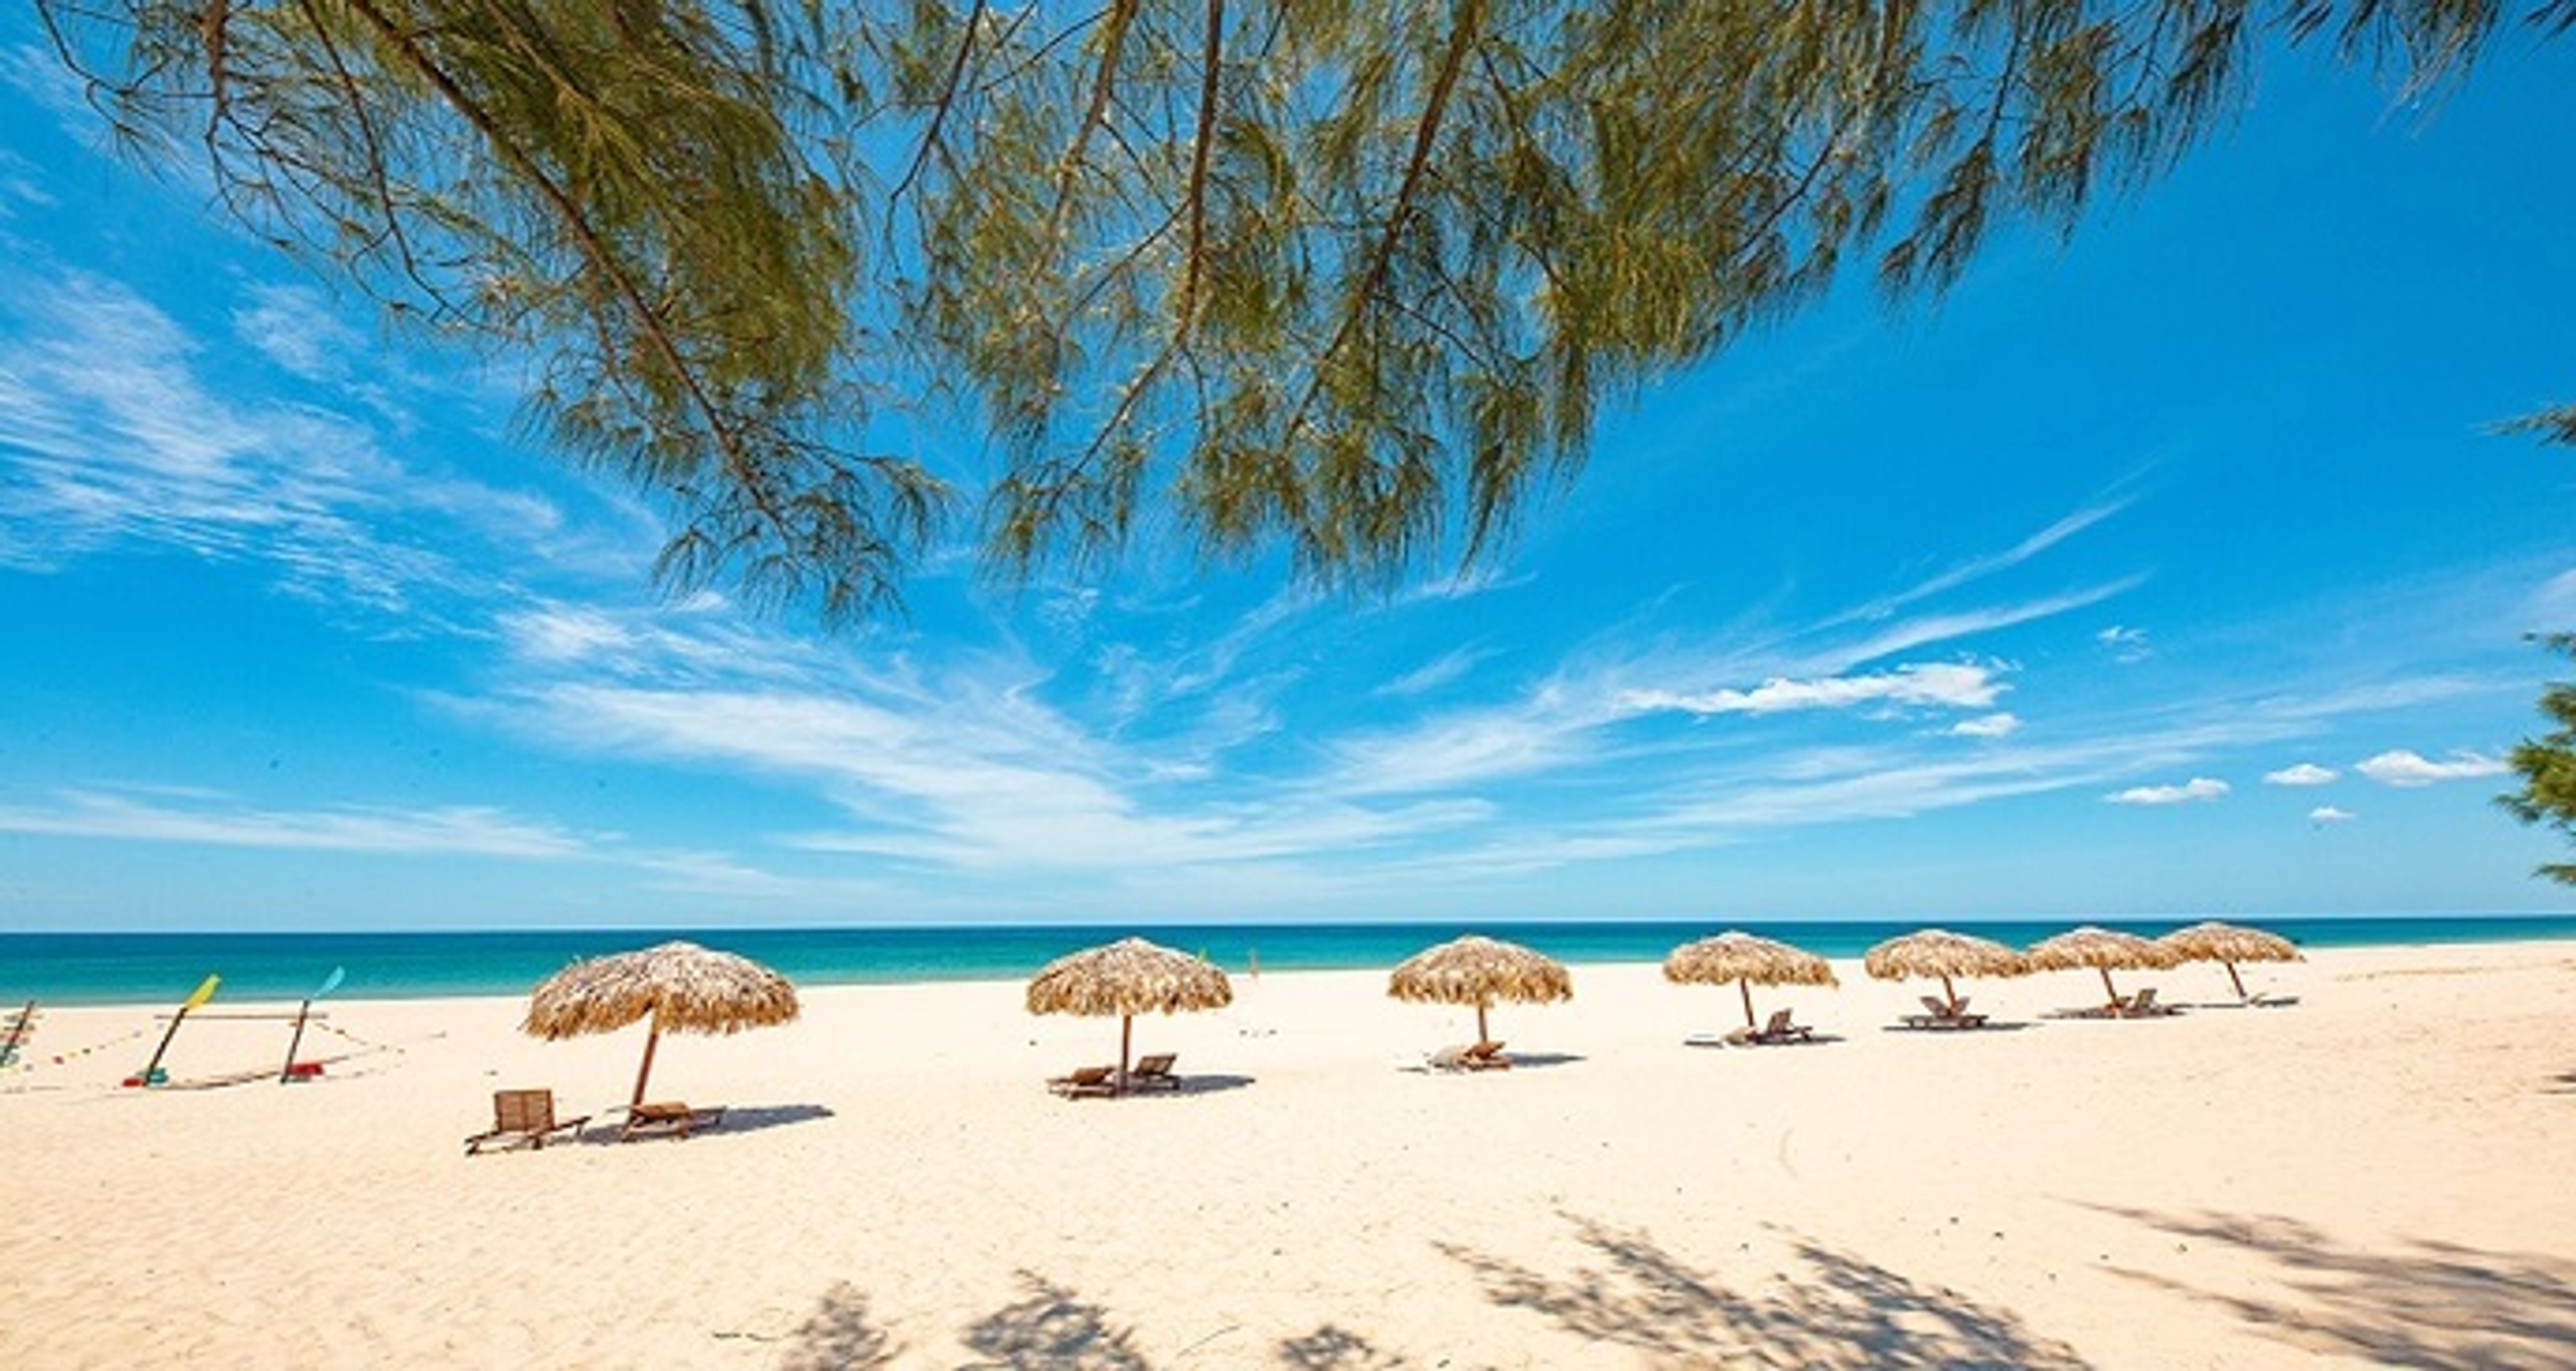 Biển Bảo Ninh - Bãi biển hoang sơ đẹp bậc nhất Quảng Bình